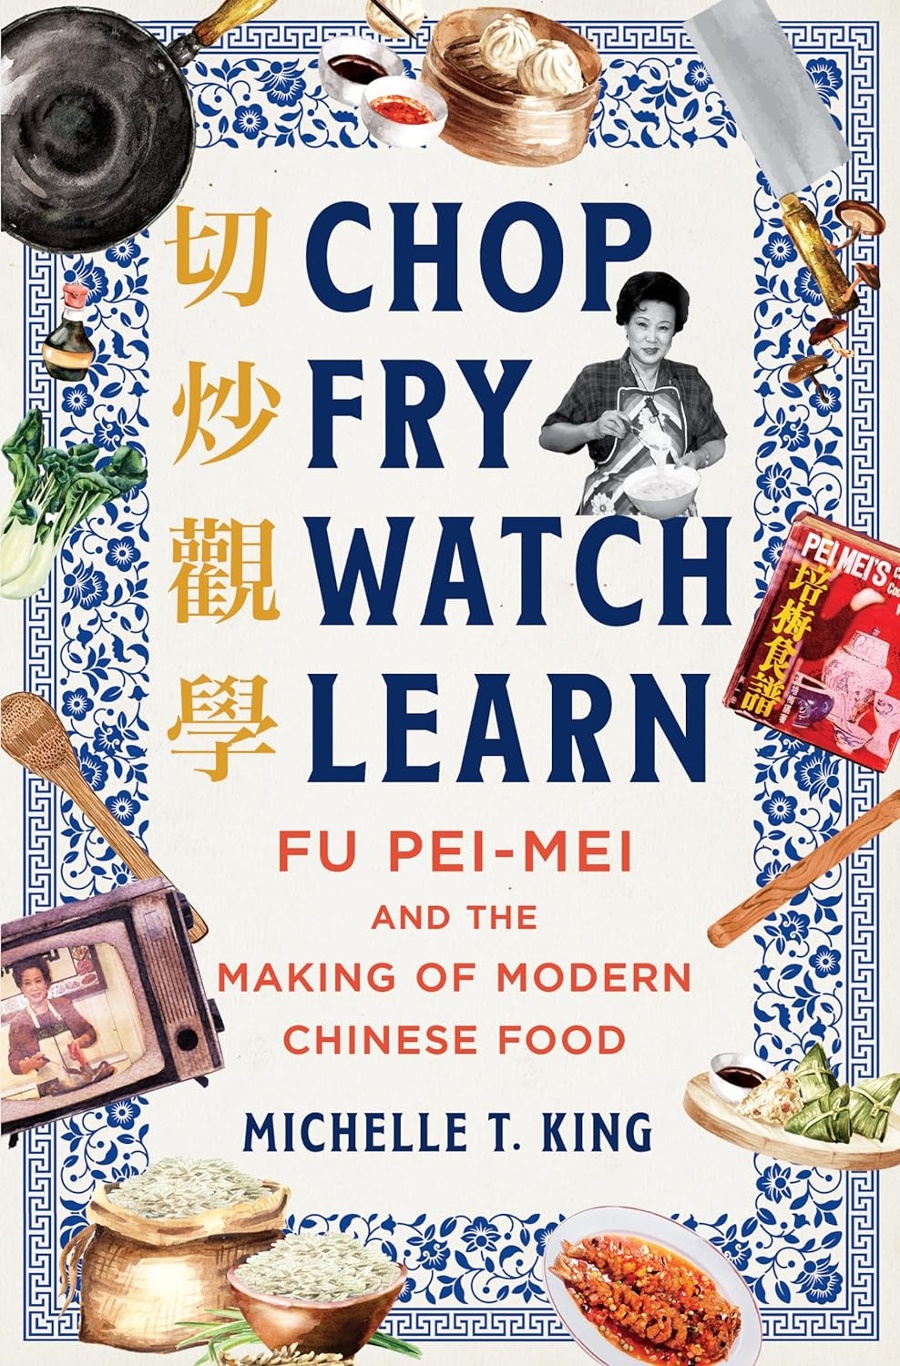 Chop Fry Watch Learn Cookbook.